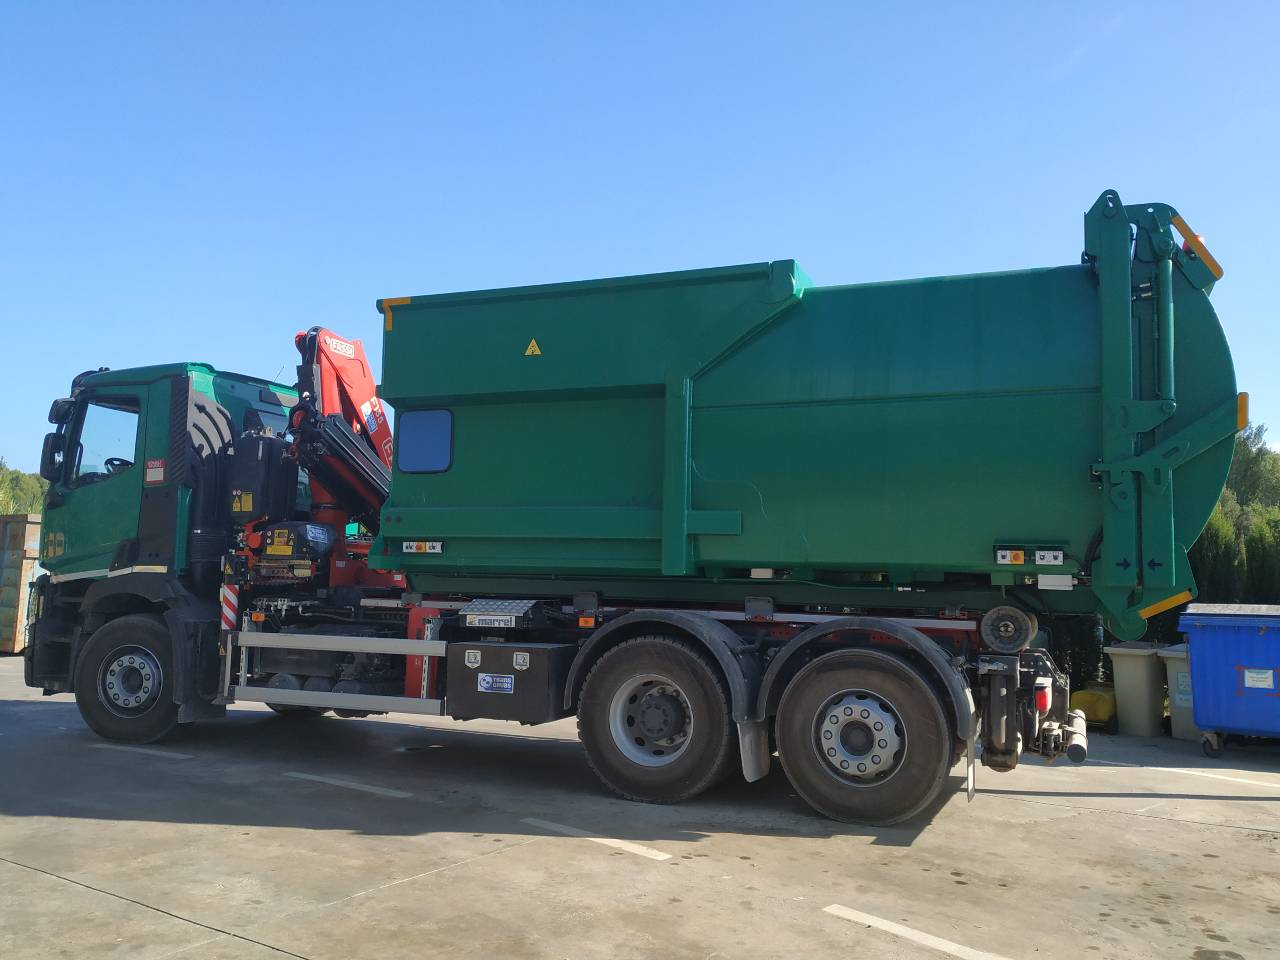 The company empresa de Servicios Juan y Juan de Vacarisses bought a top loading compaction equipment